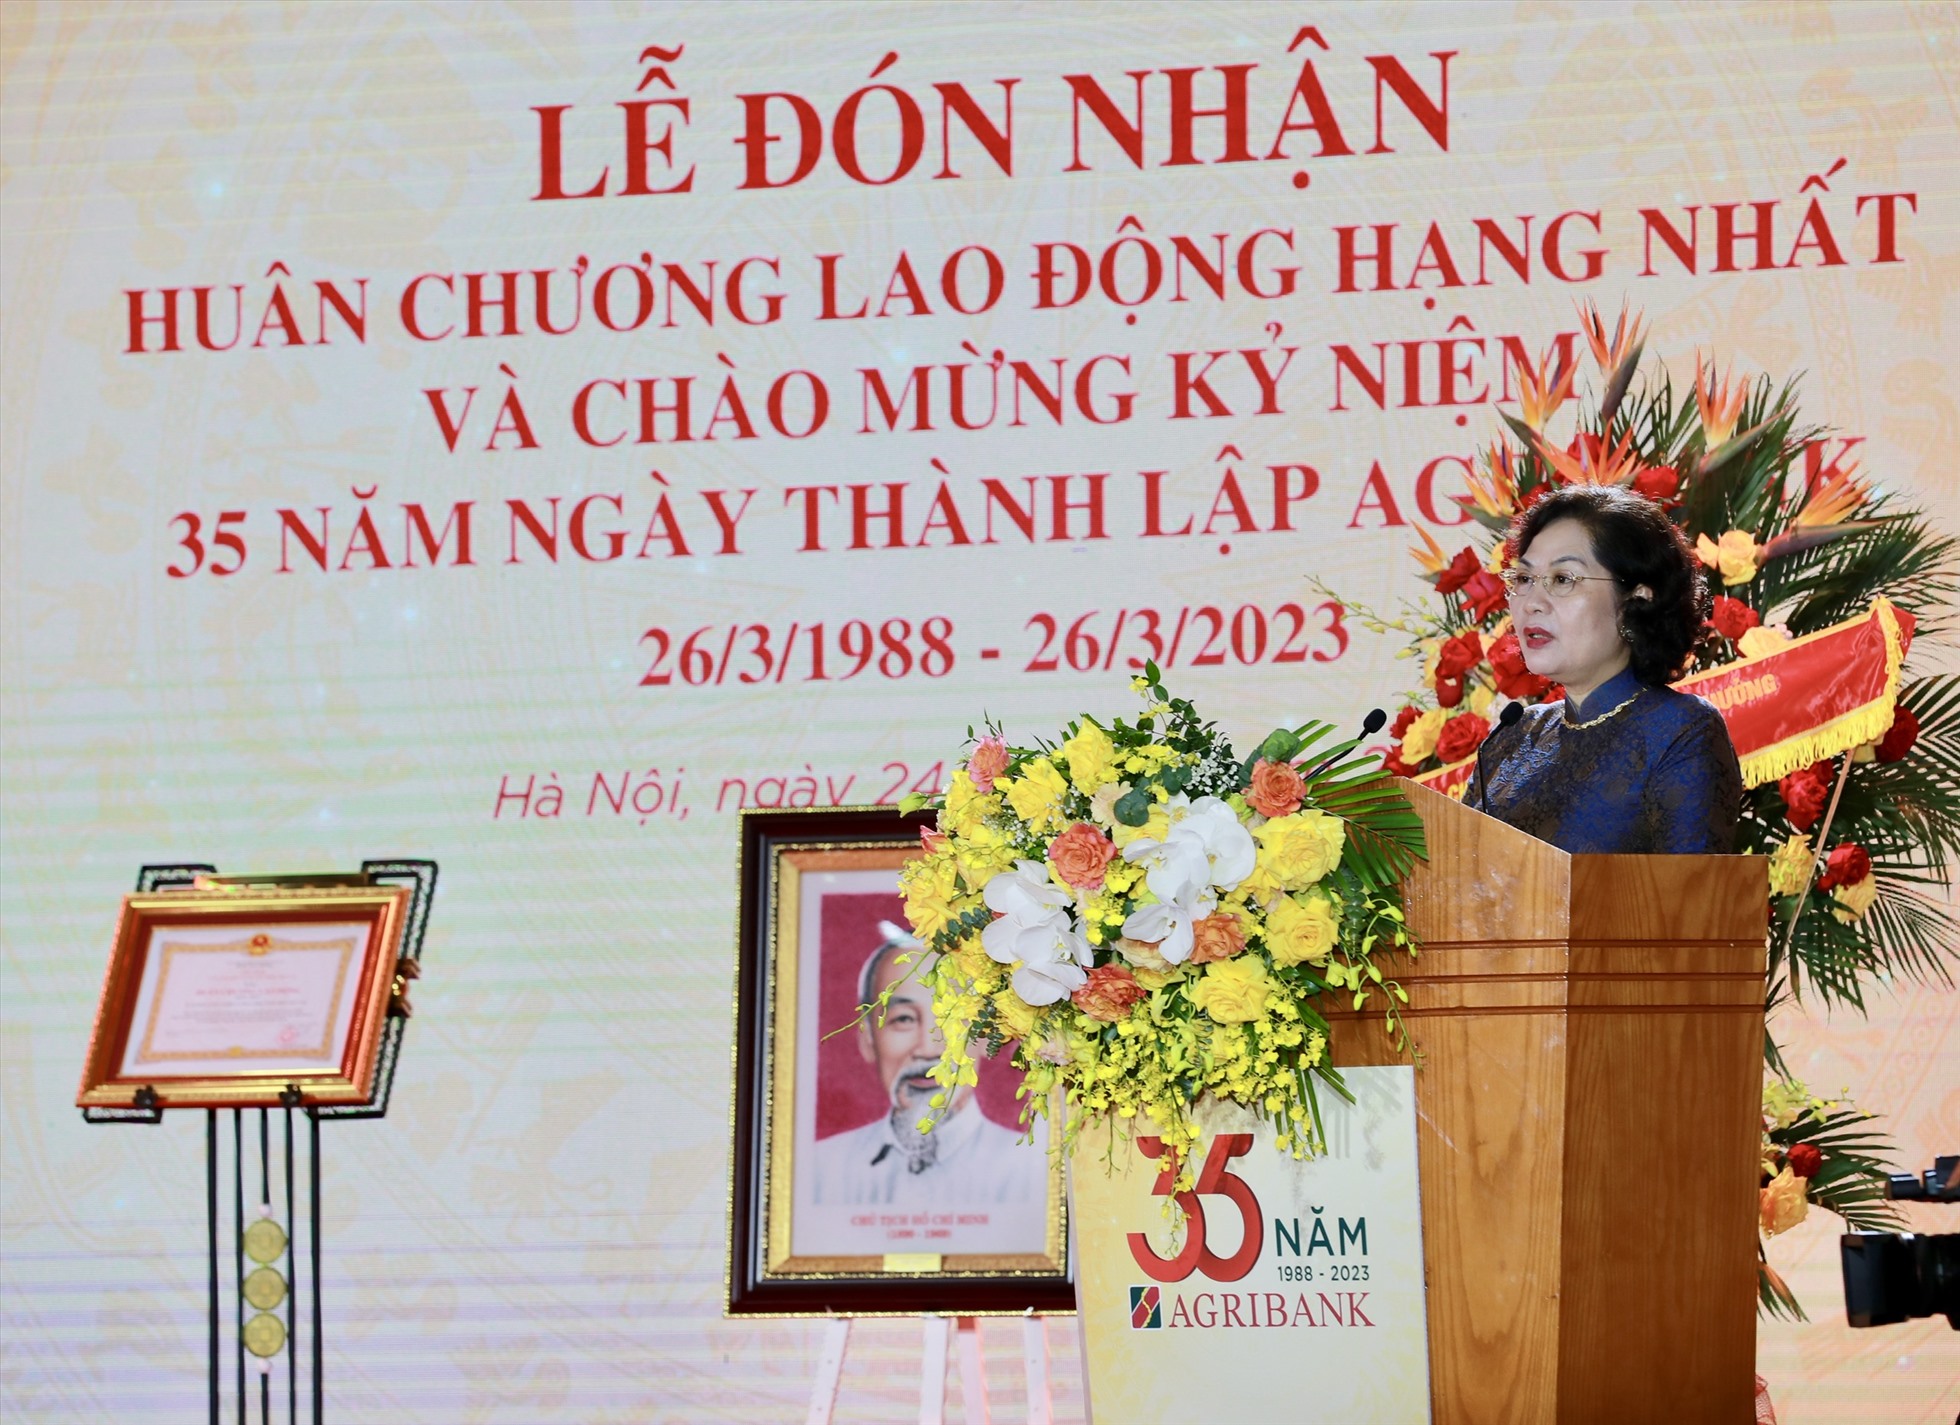 Bà Nguyễn Thị Hồng - Thống đốc Ngân hàng Nhà nước phát biểu tại buổi lễ. Ảnh: Agribank